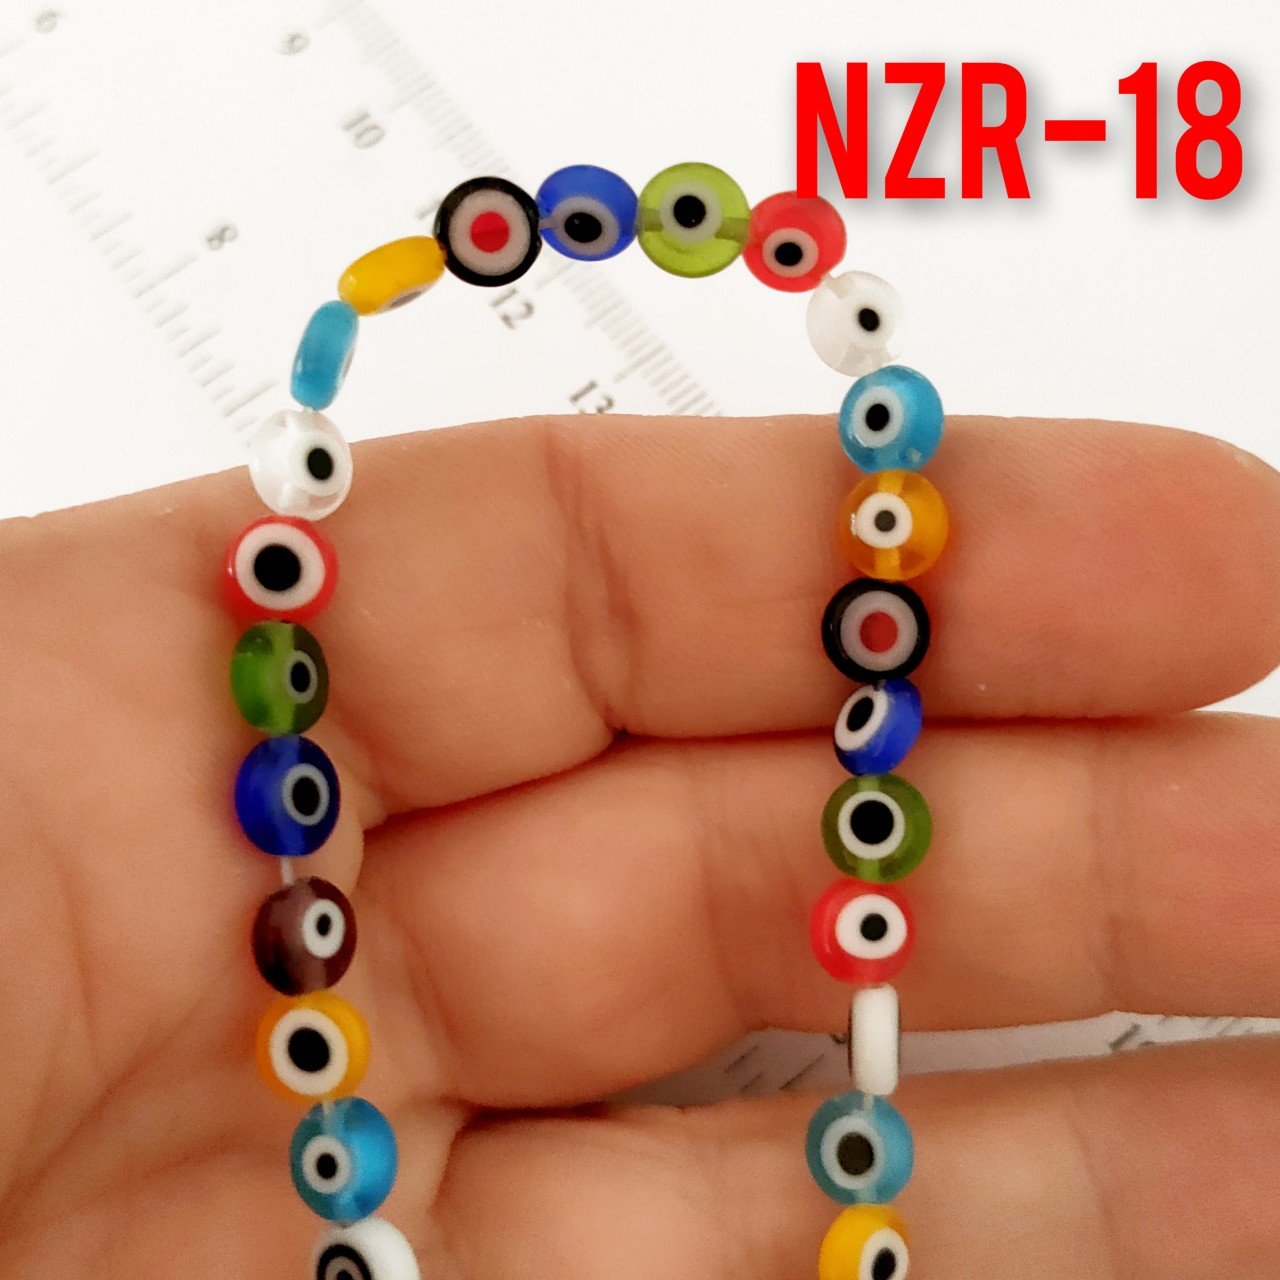 NZR-18 Karışık Renk Yassı Dizi Nazar Boncuğu 6*3 mm